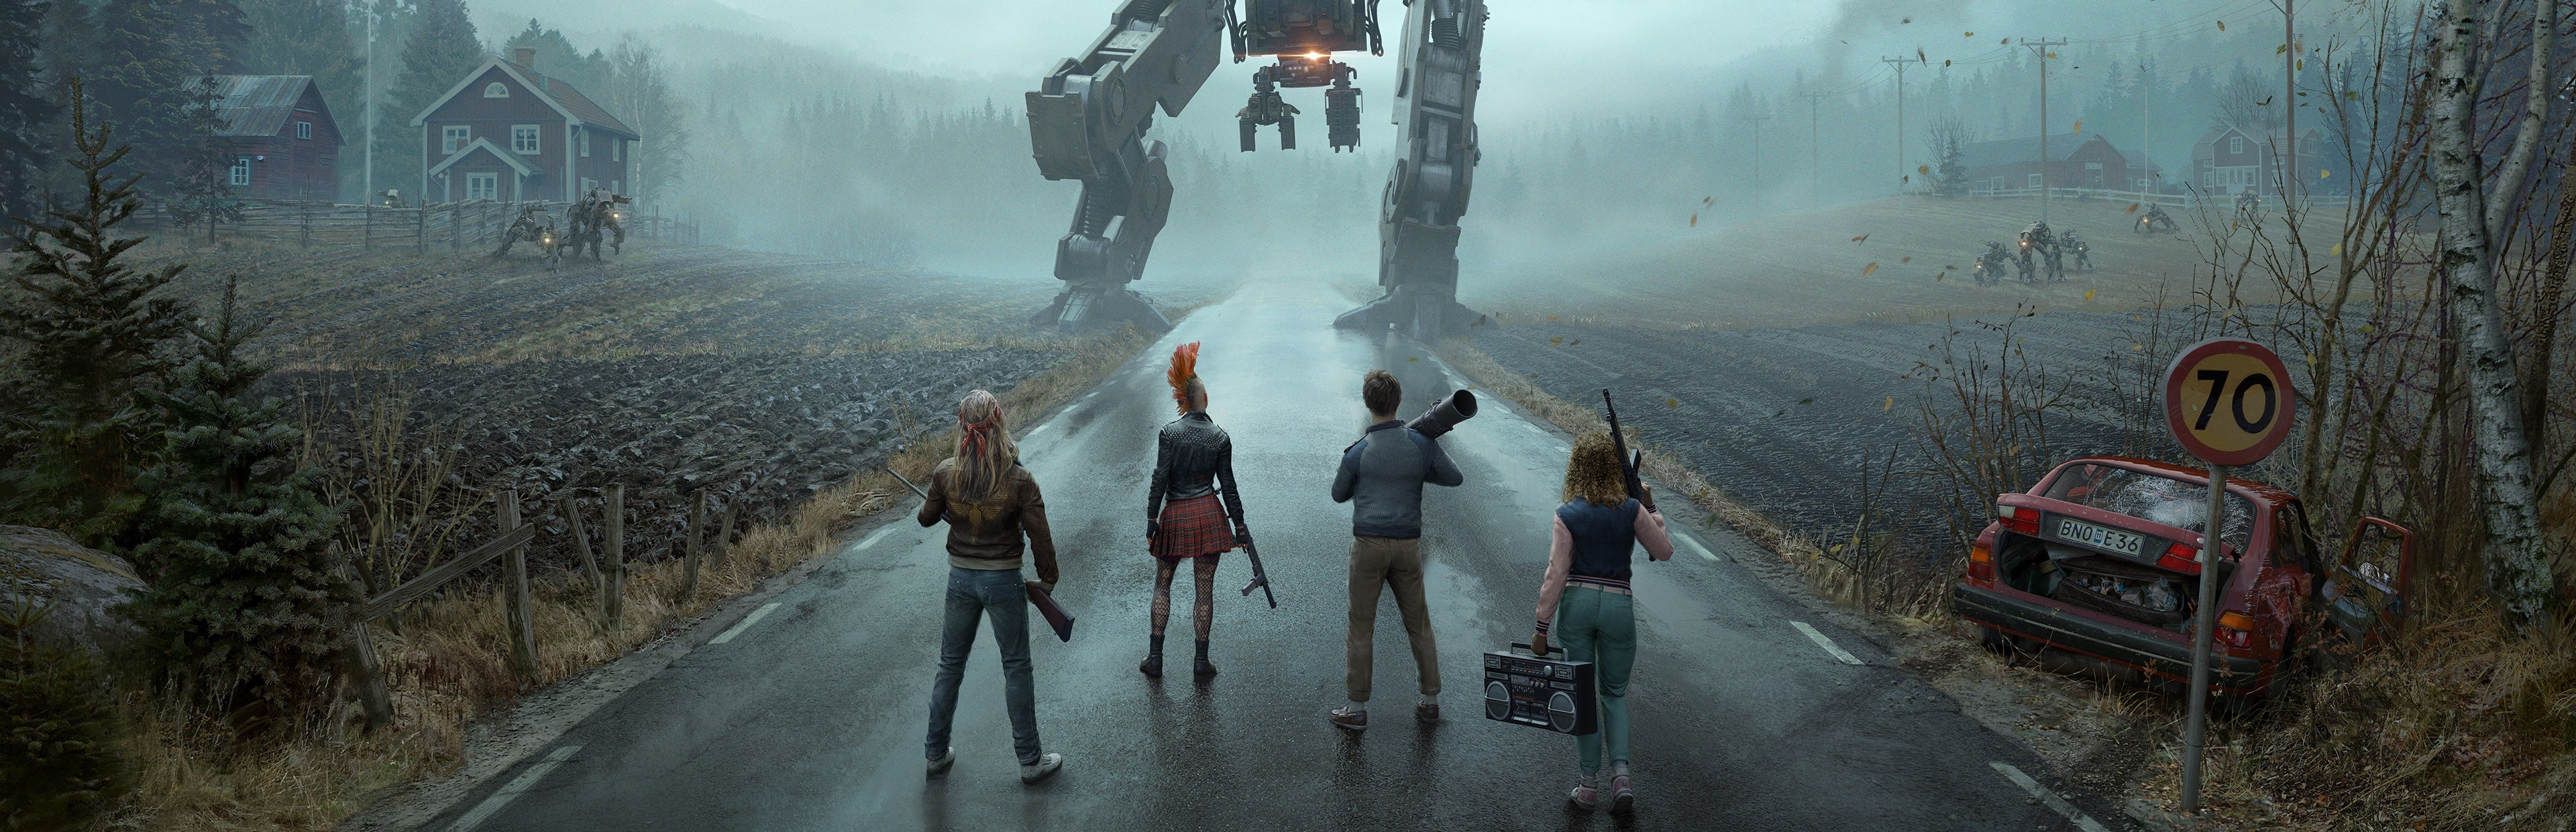 Generation Zero Review - Robots in Sweden! | Games